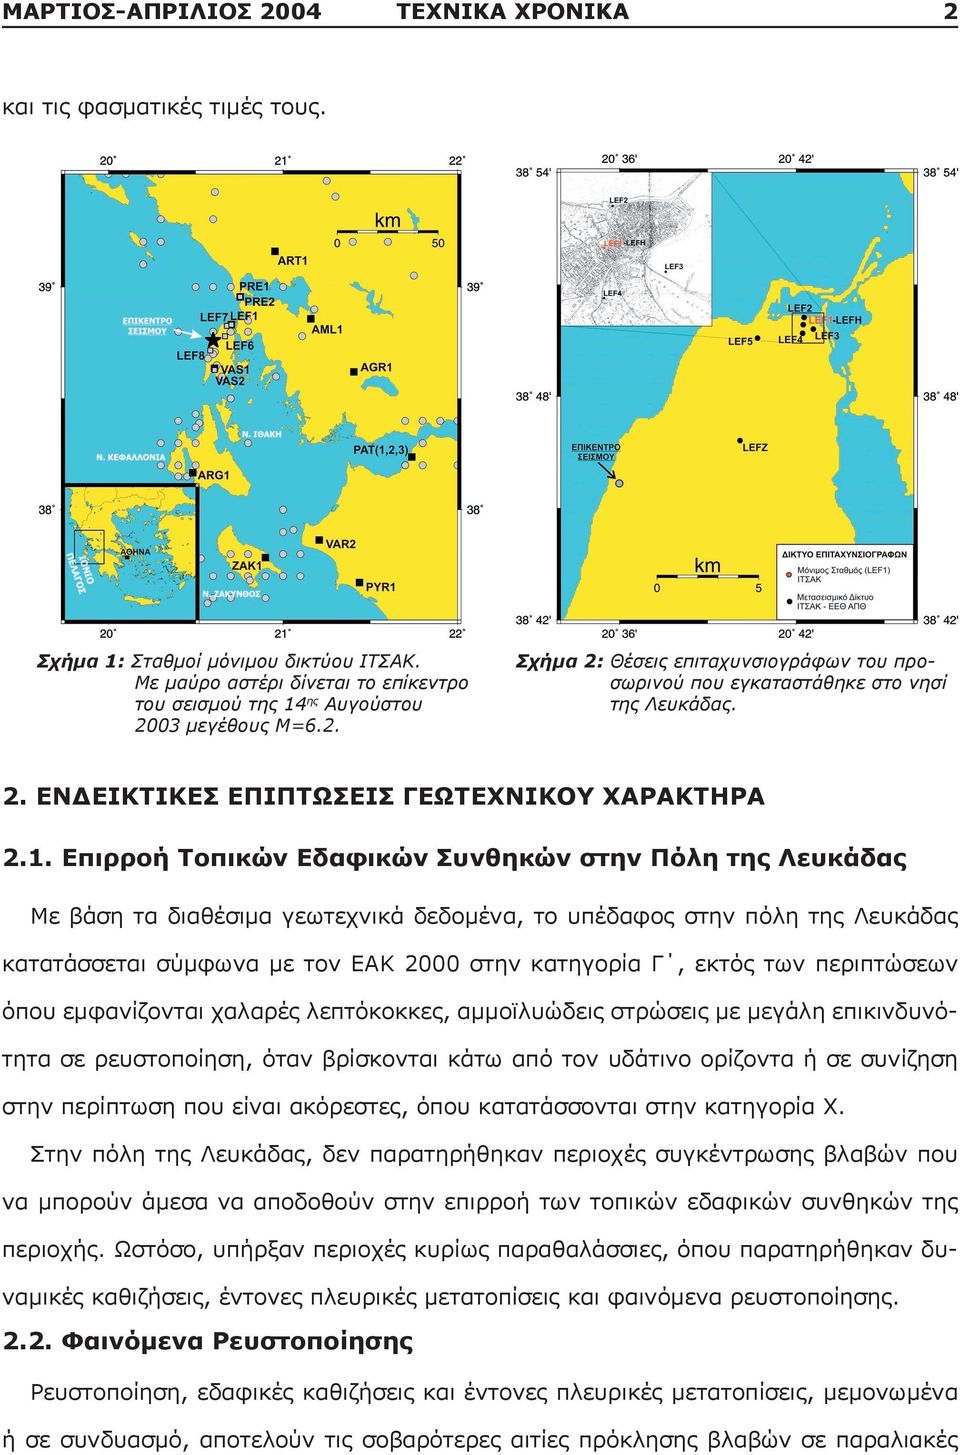 Επιρροή Τοπικών Εδαφικών Συνθηκών στην Πόλη της Λευκάδας Με βάση τα διαθέσιμα γεωτεχνικά δεδομένα, το υπέδαφος στην πόλη της Λευκάδας κατατάσσεται σύμφωνα με τον ΕΑΚ 2000 στην κατηγορία Γ, εκτός των